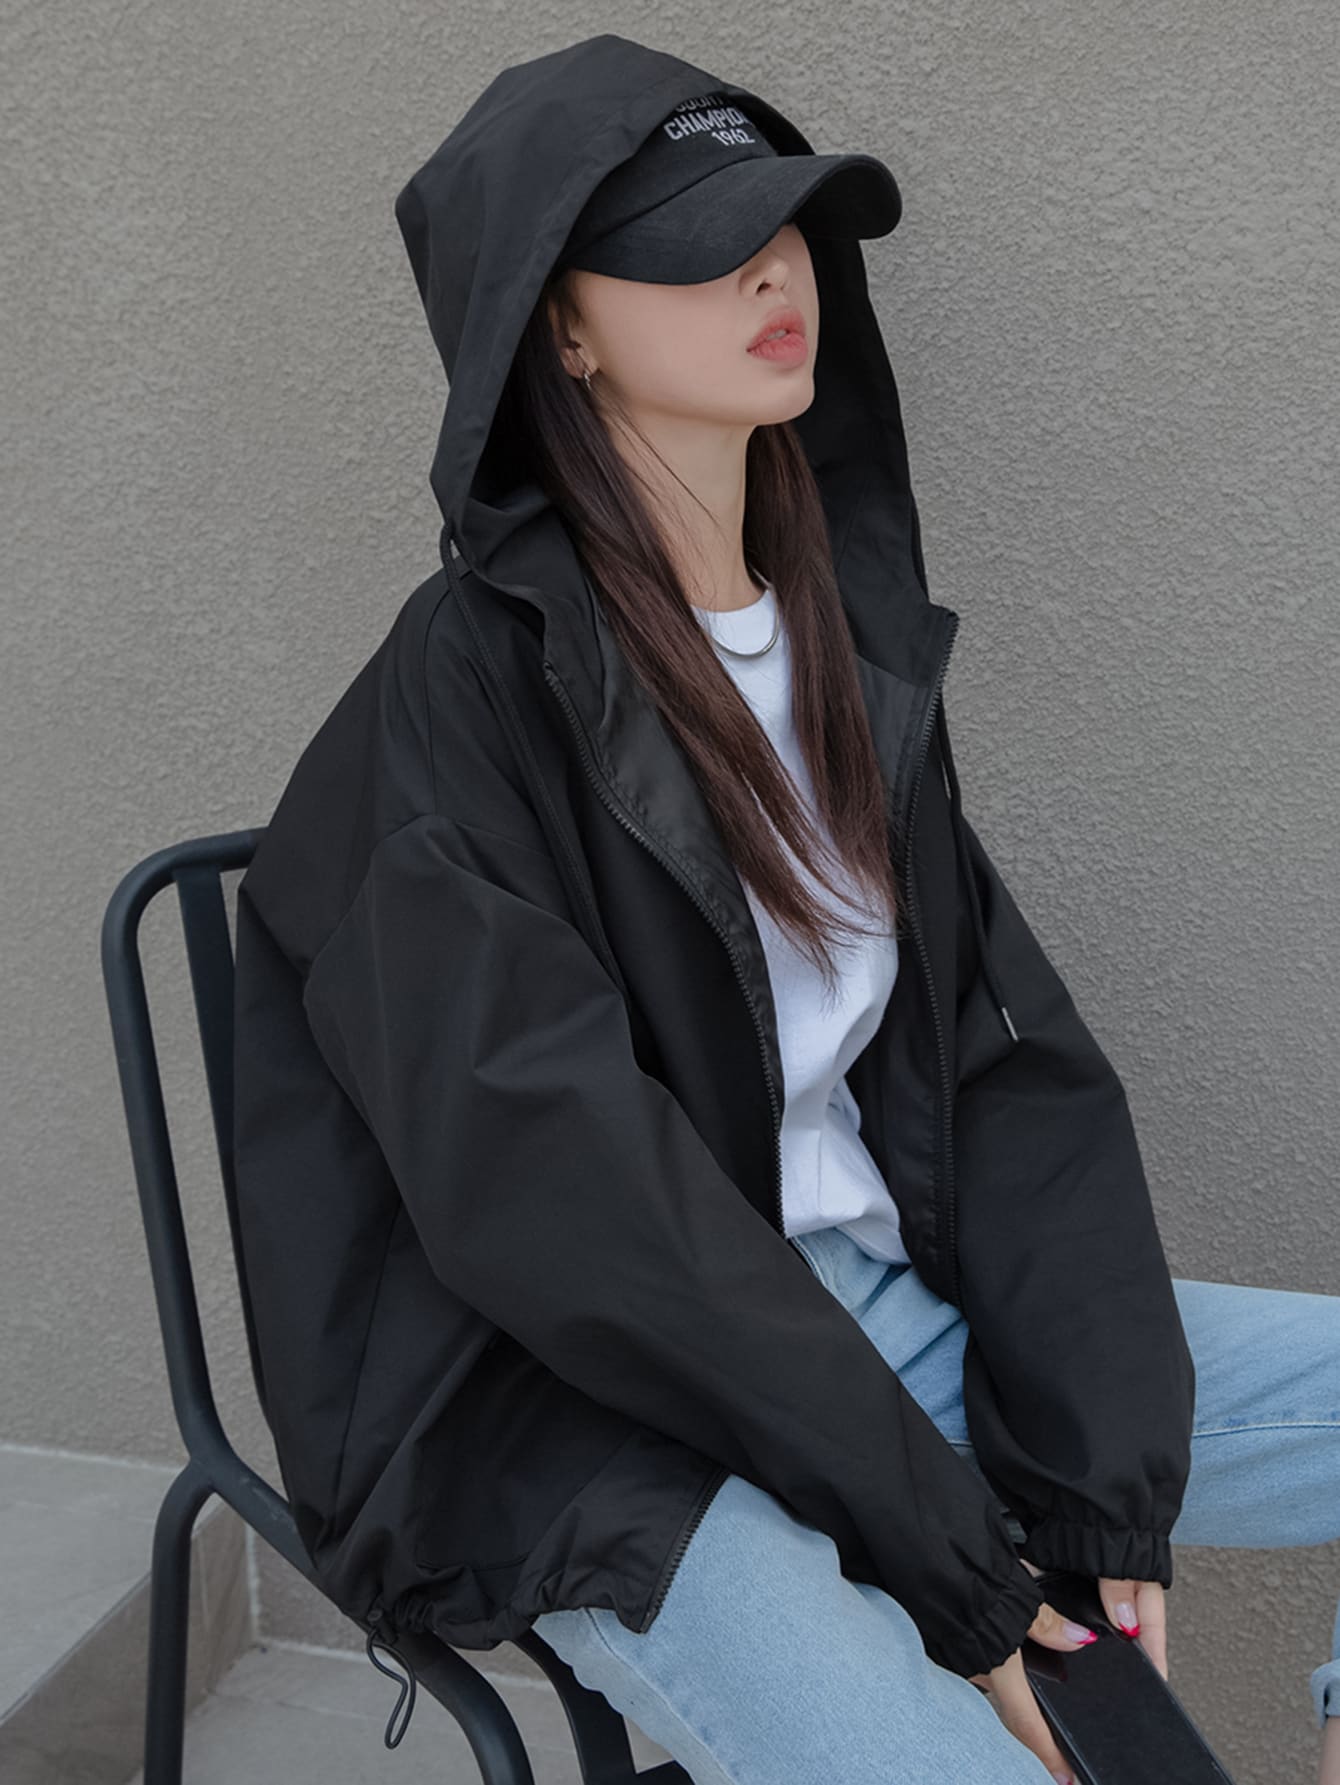 Drop Shoulder Drawstring Hooded Jacket